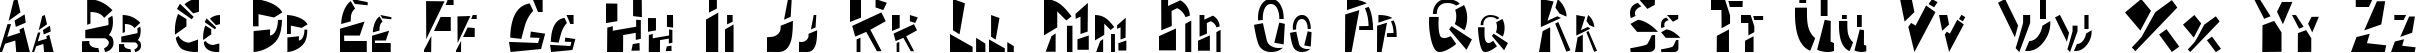 Пример написания английского алфавита шрифтом Schizm